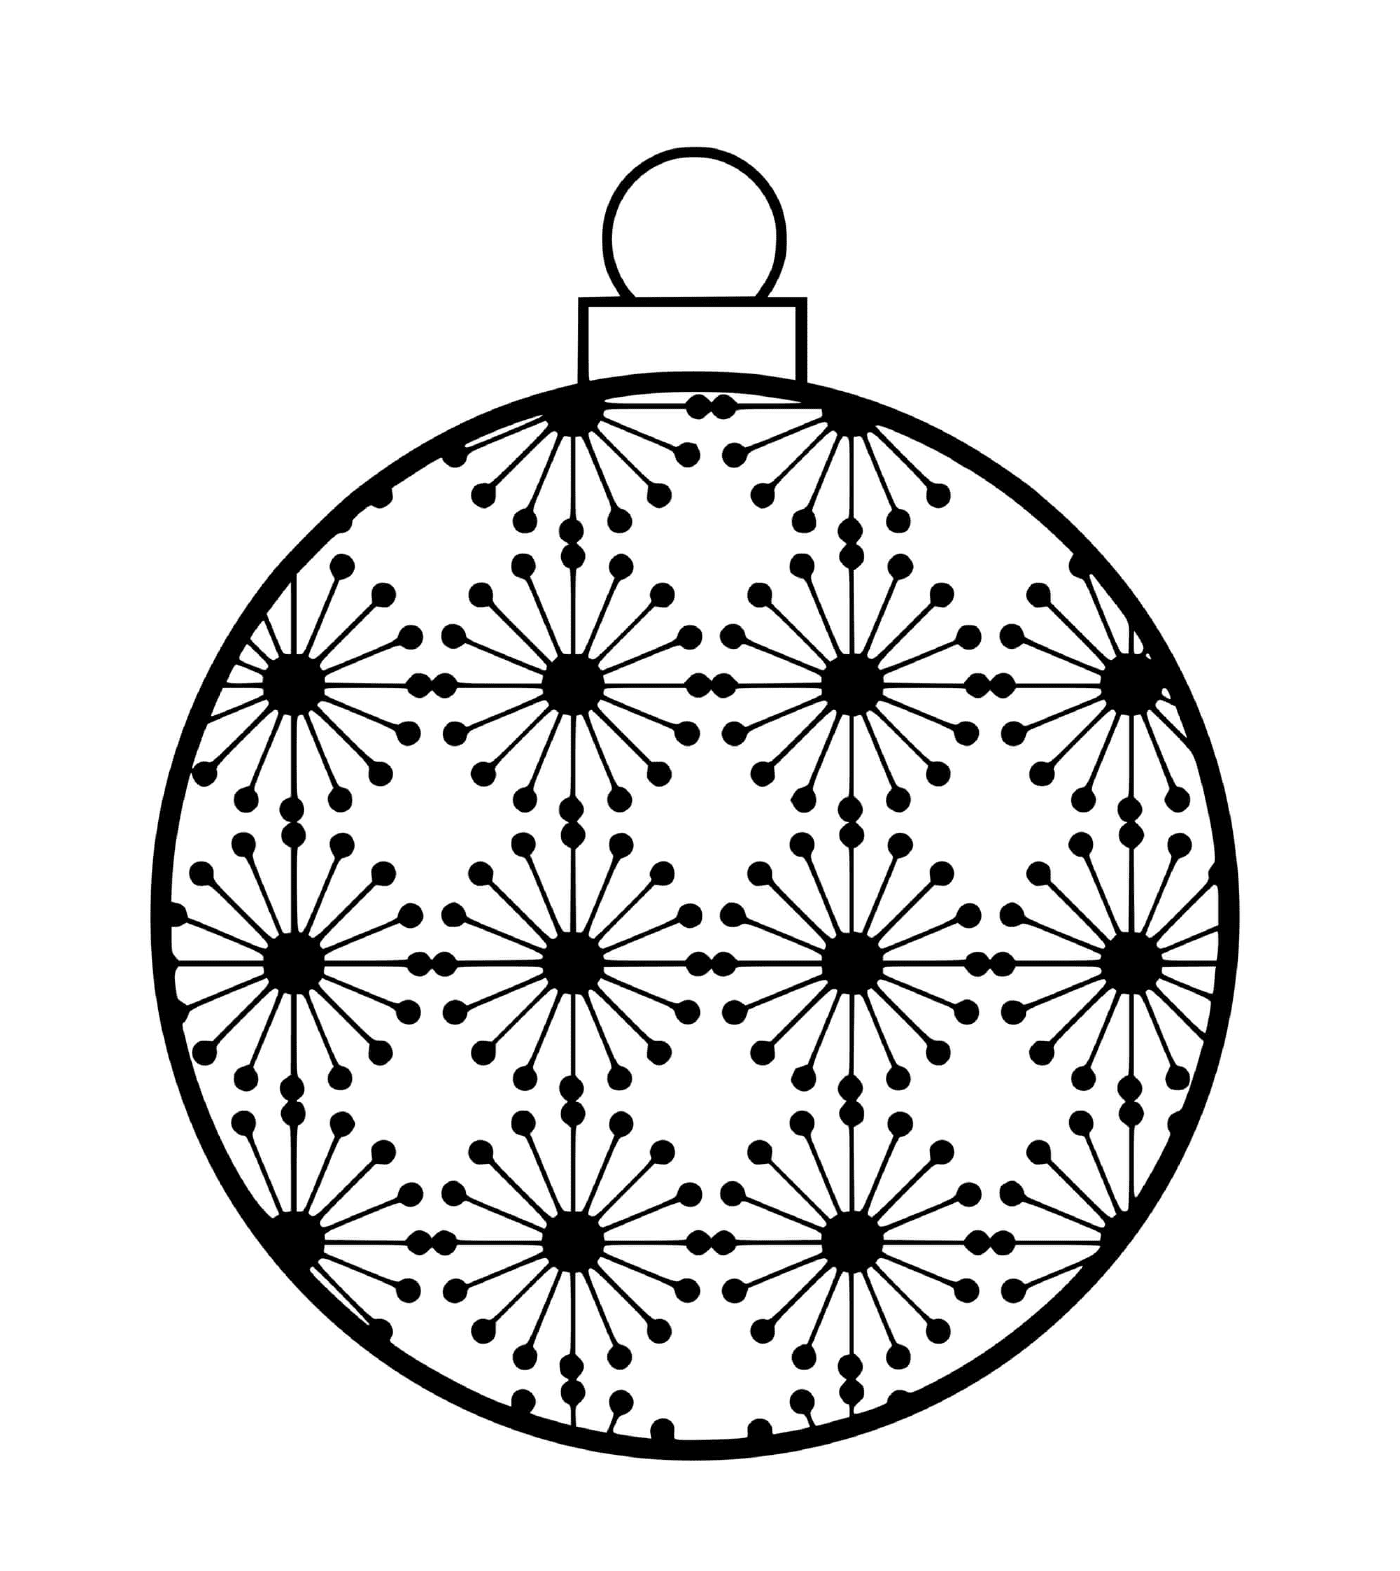  Uma bola de Natal com padrões científicos de átomos 